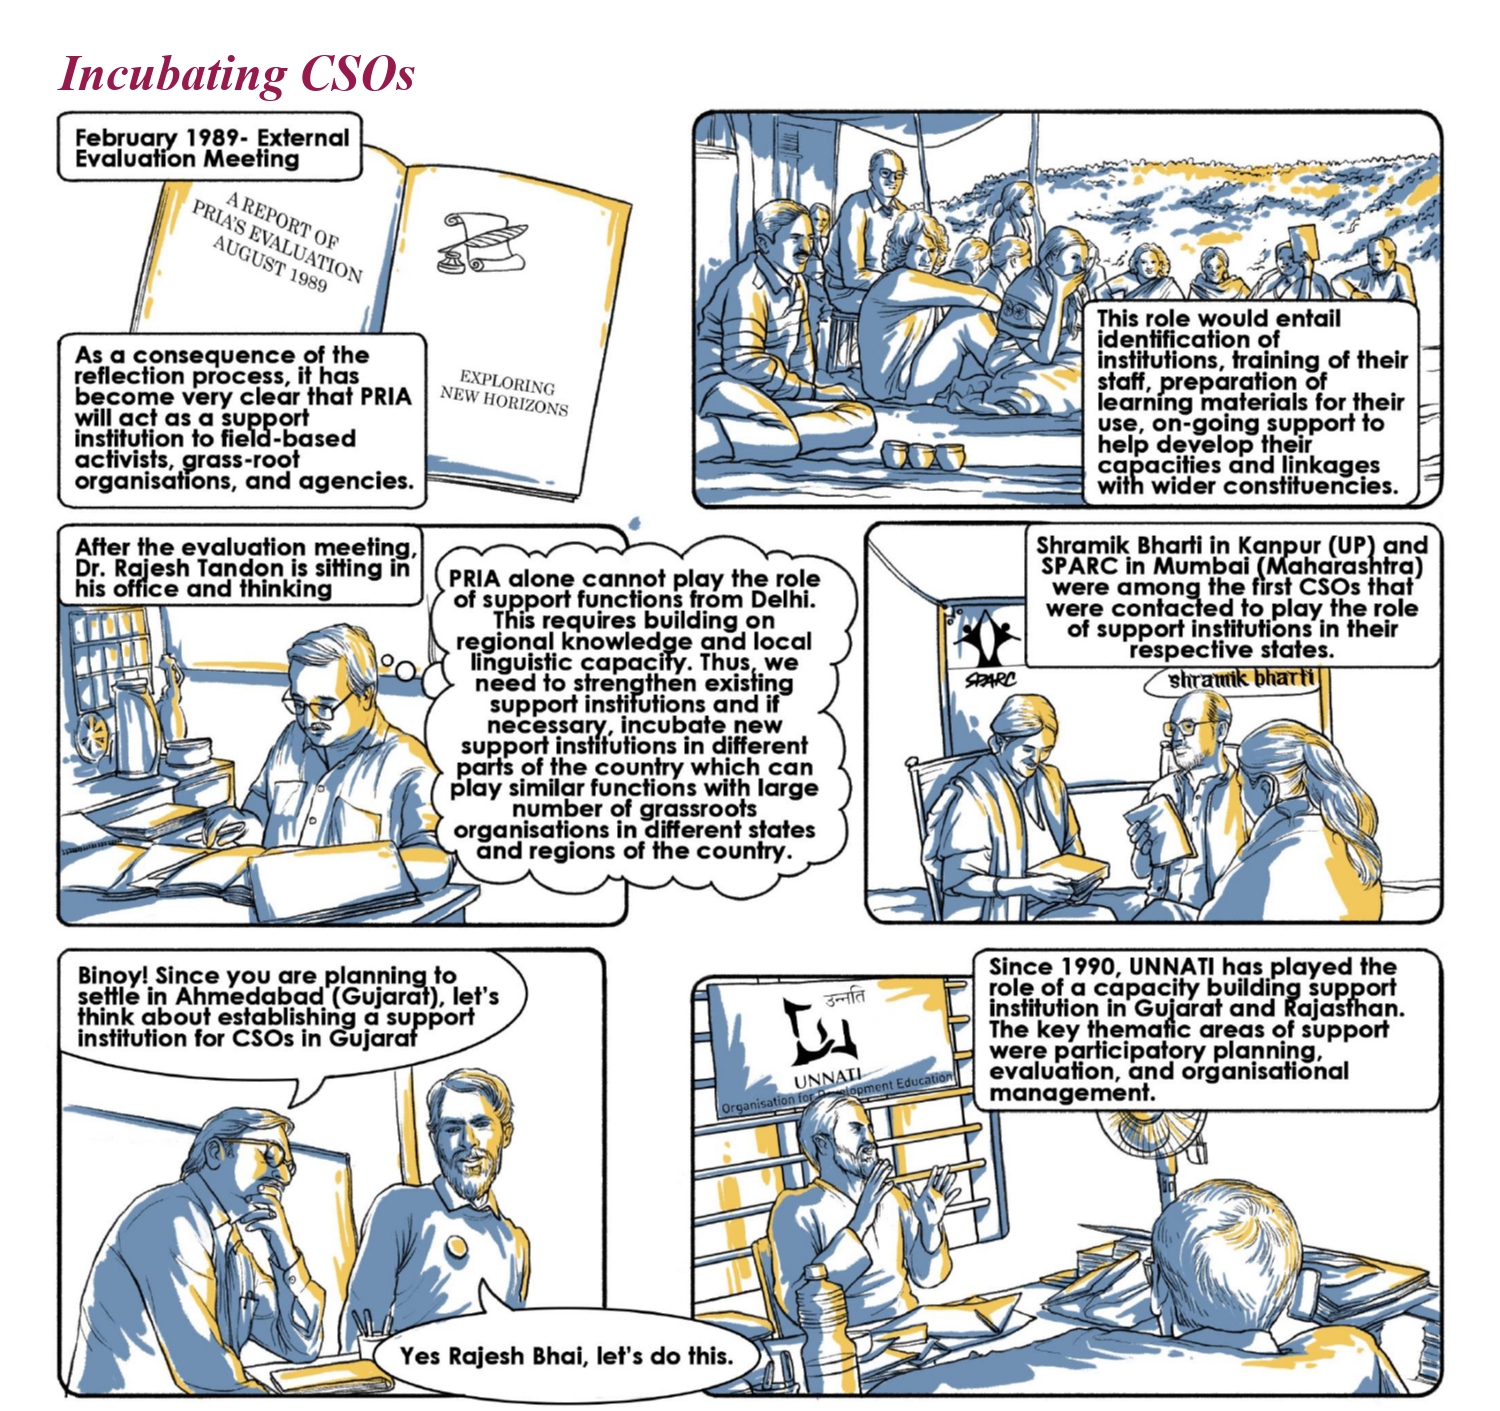 Incubating CSOs